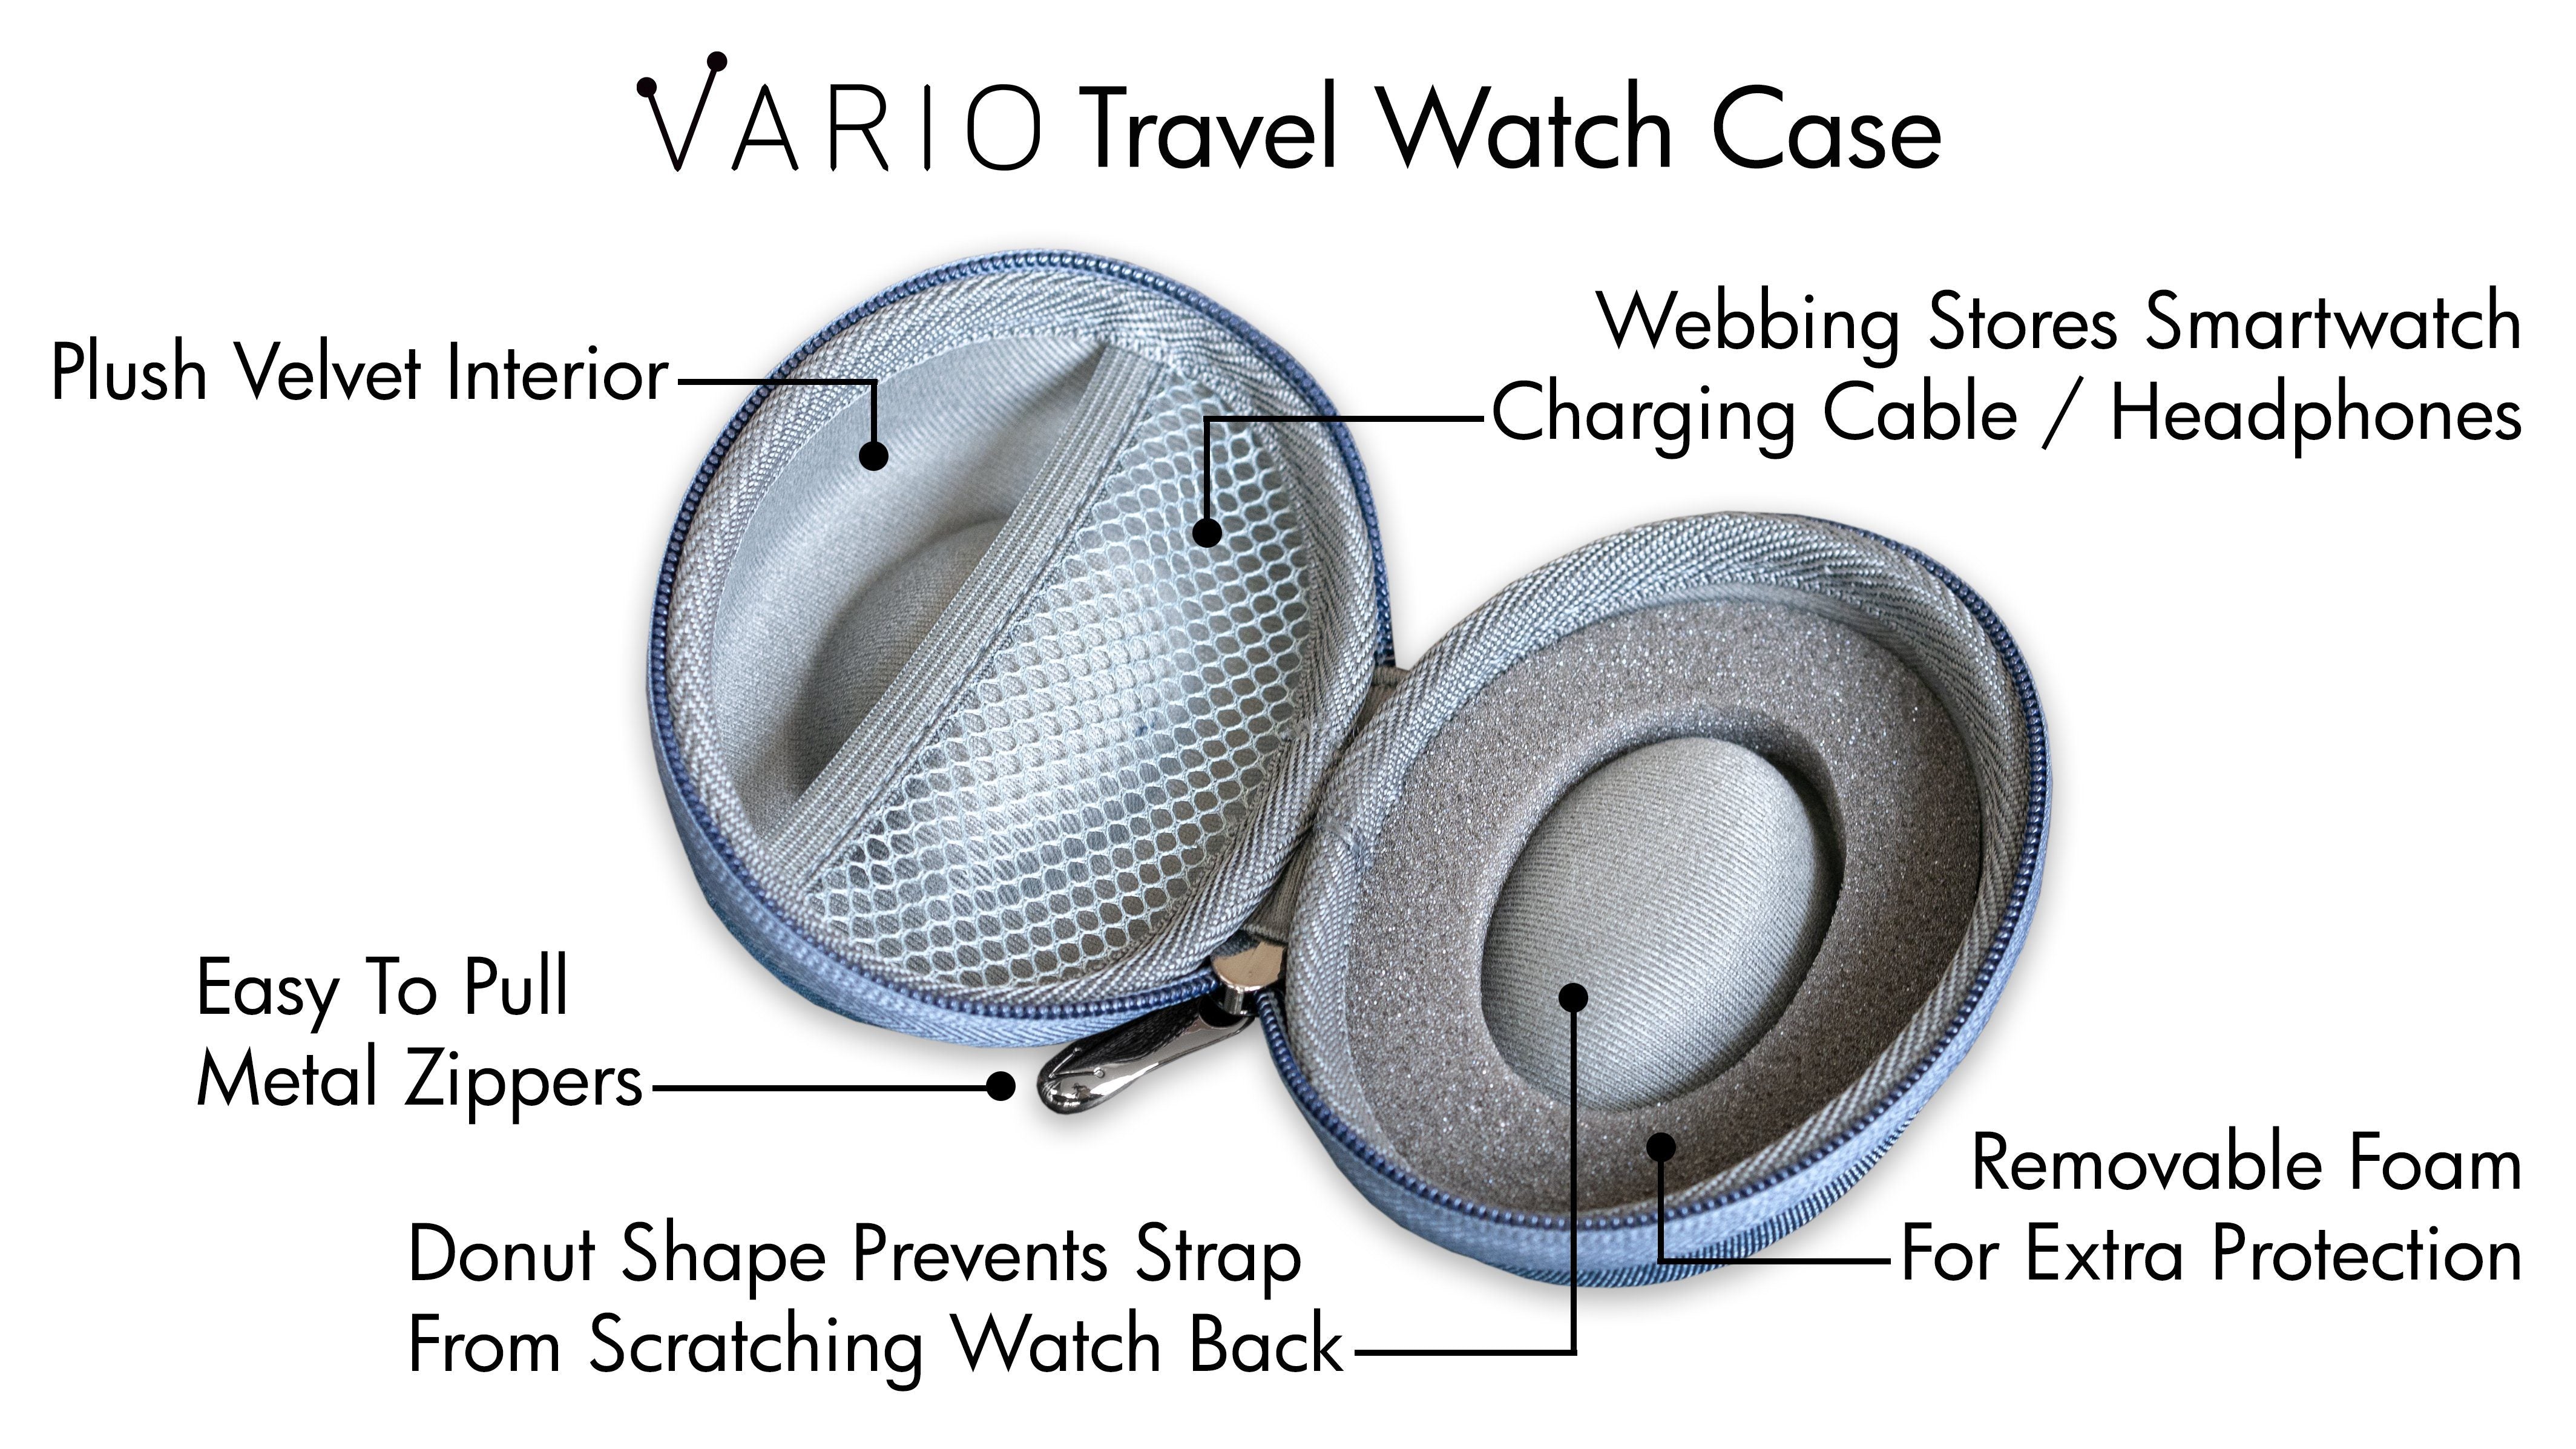 vario travel watch case benefits